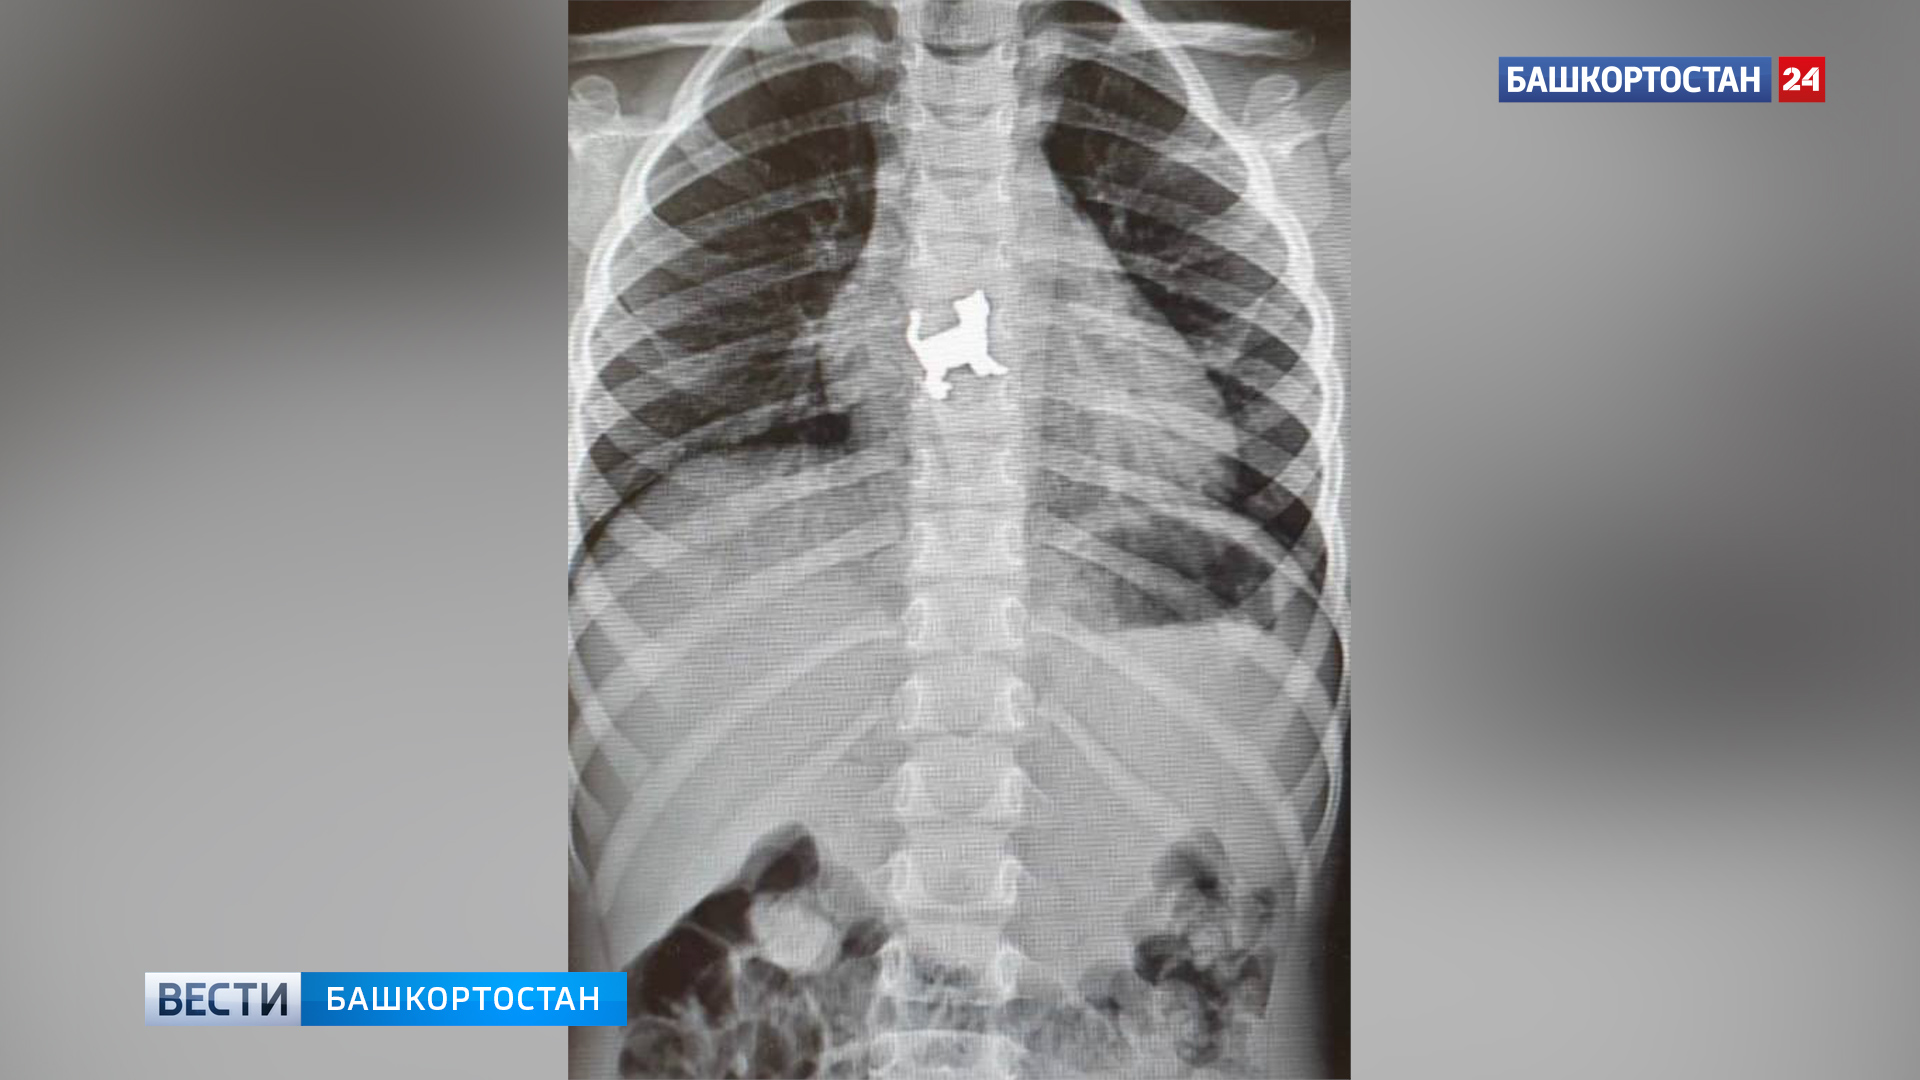 В Уфе хирурги спасли 3-летнюю девочку, которая проглотила металлическую игрушку в форме кошки | 0